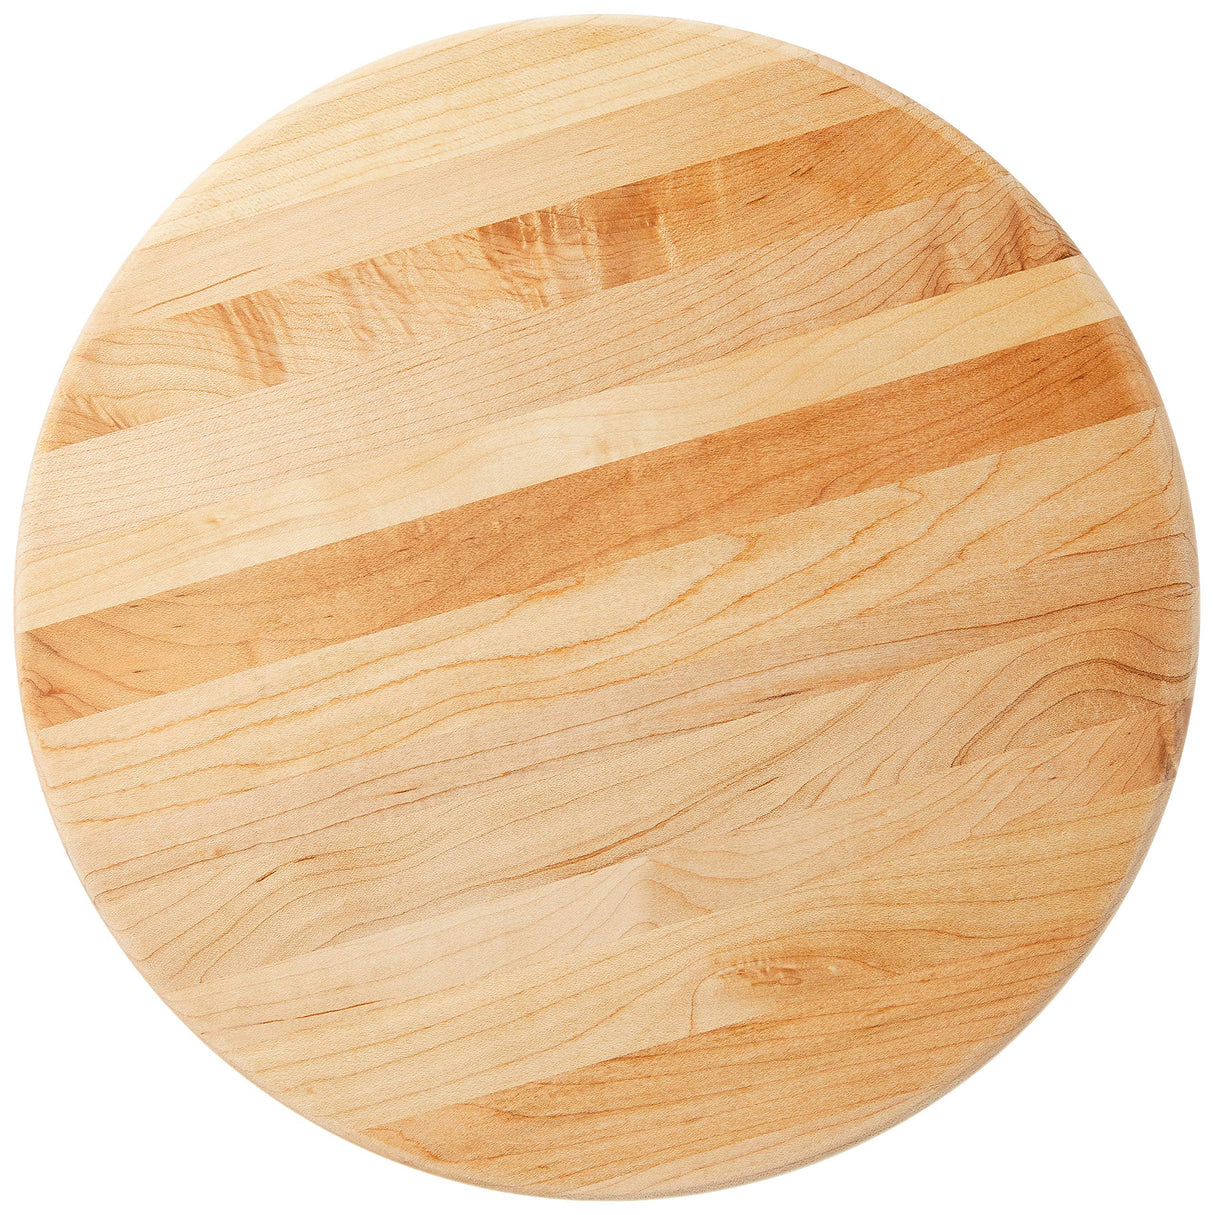 John Boos B12R Maple Wood Cutting Board for Kitchen Prep, 12 Inch in Diameter, 1.5 Thick Edge Grain Round Charcuterie Block with Wooden Bun Feet 12DIAX1.5 MPL-EDGE GR-MPL BUN FT